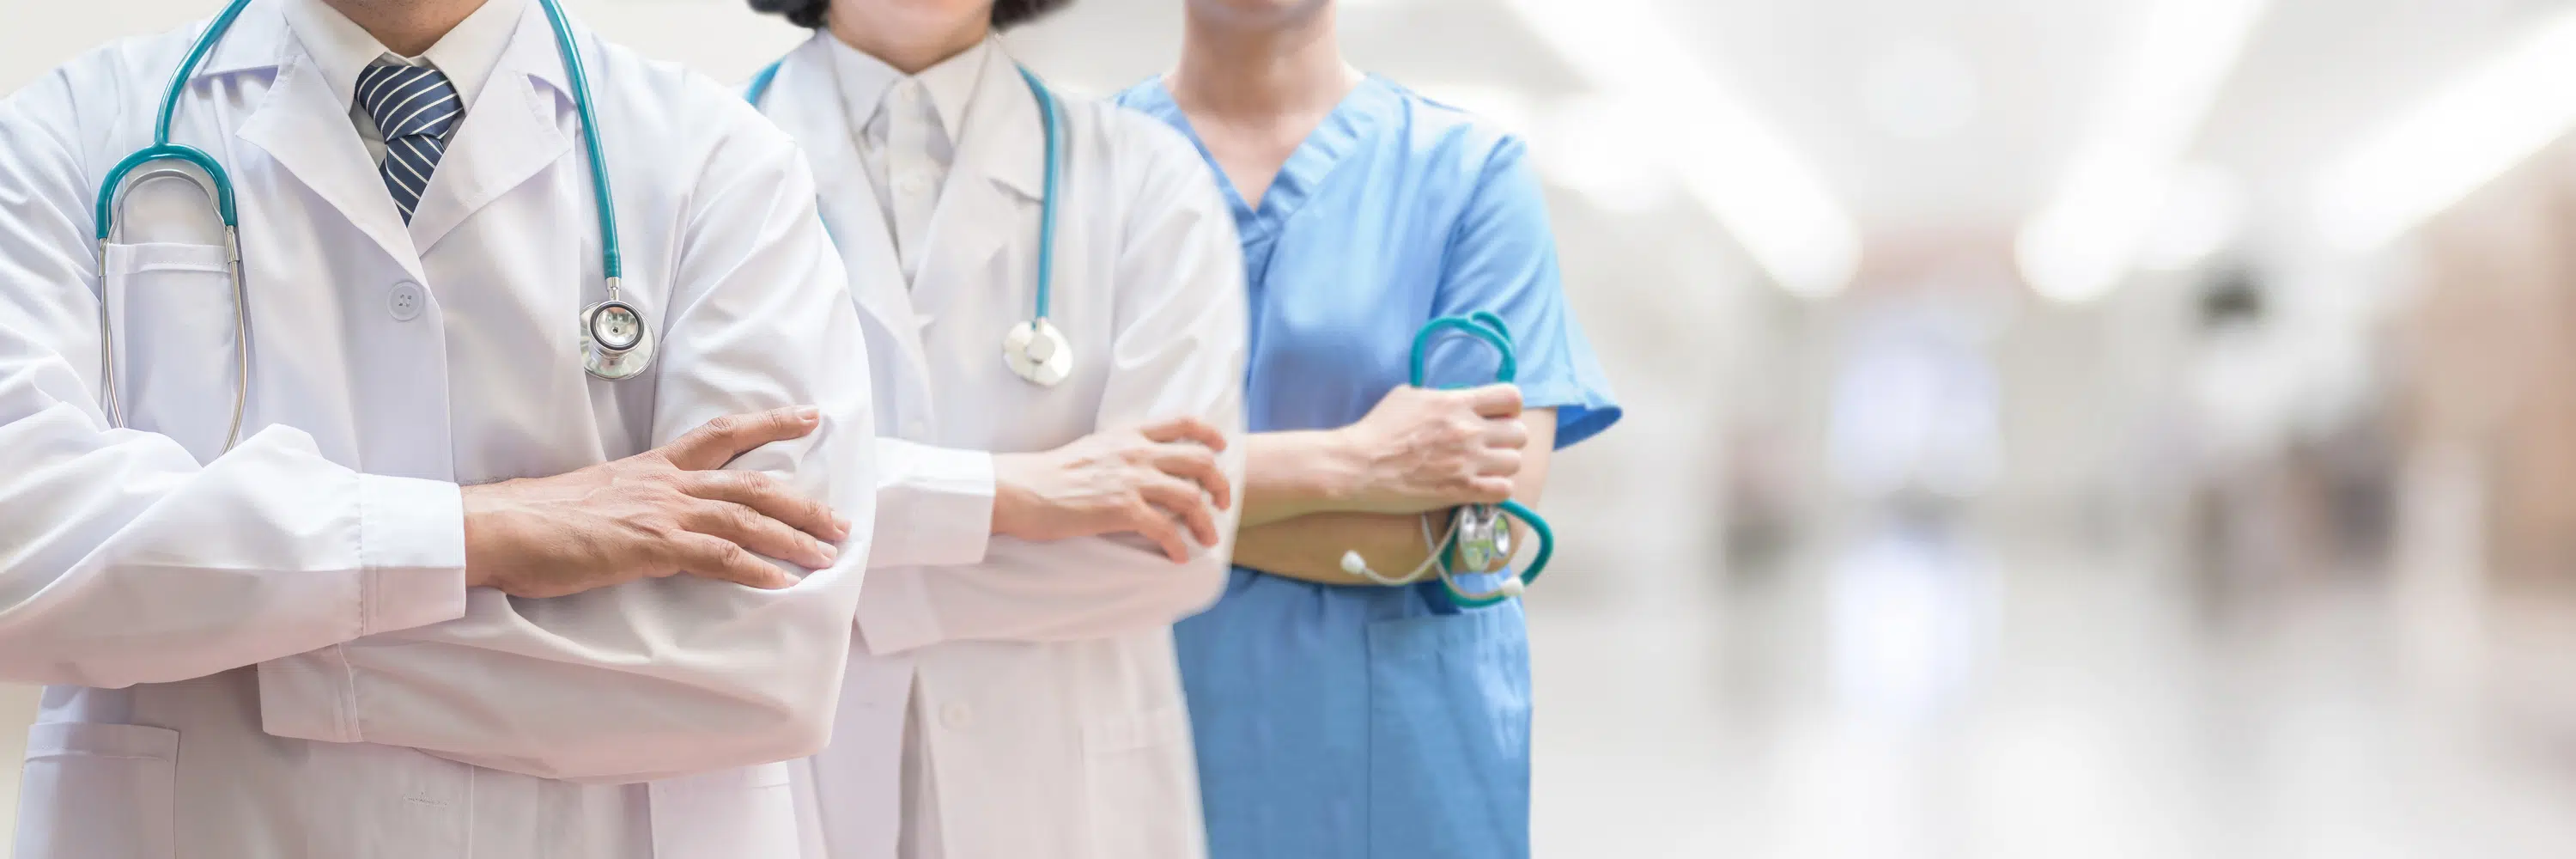 ¿Qué puedes estudiar después de Técnico en Cuidados Auxiliares de Enfermería?